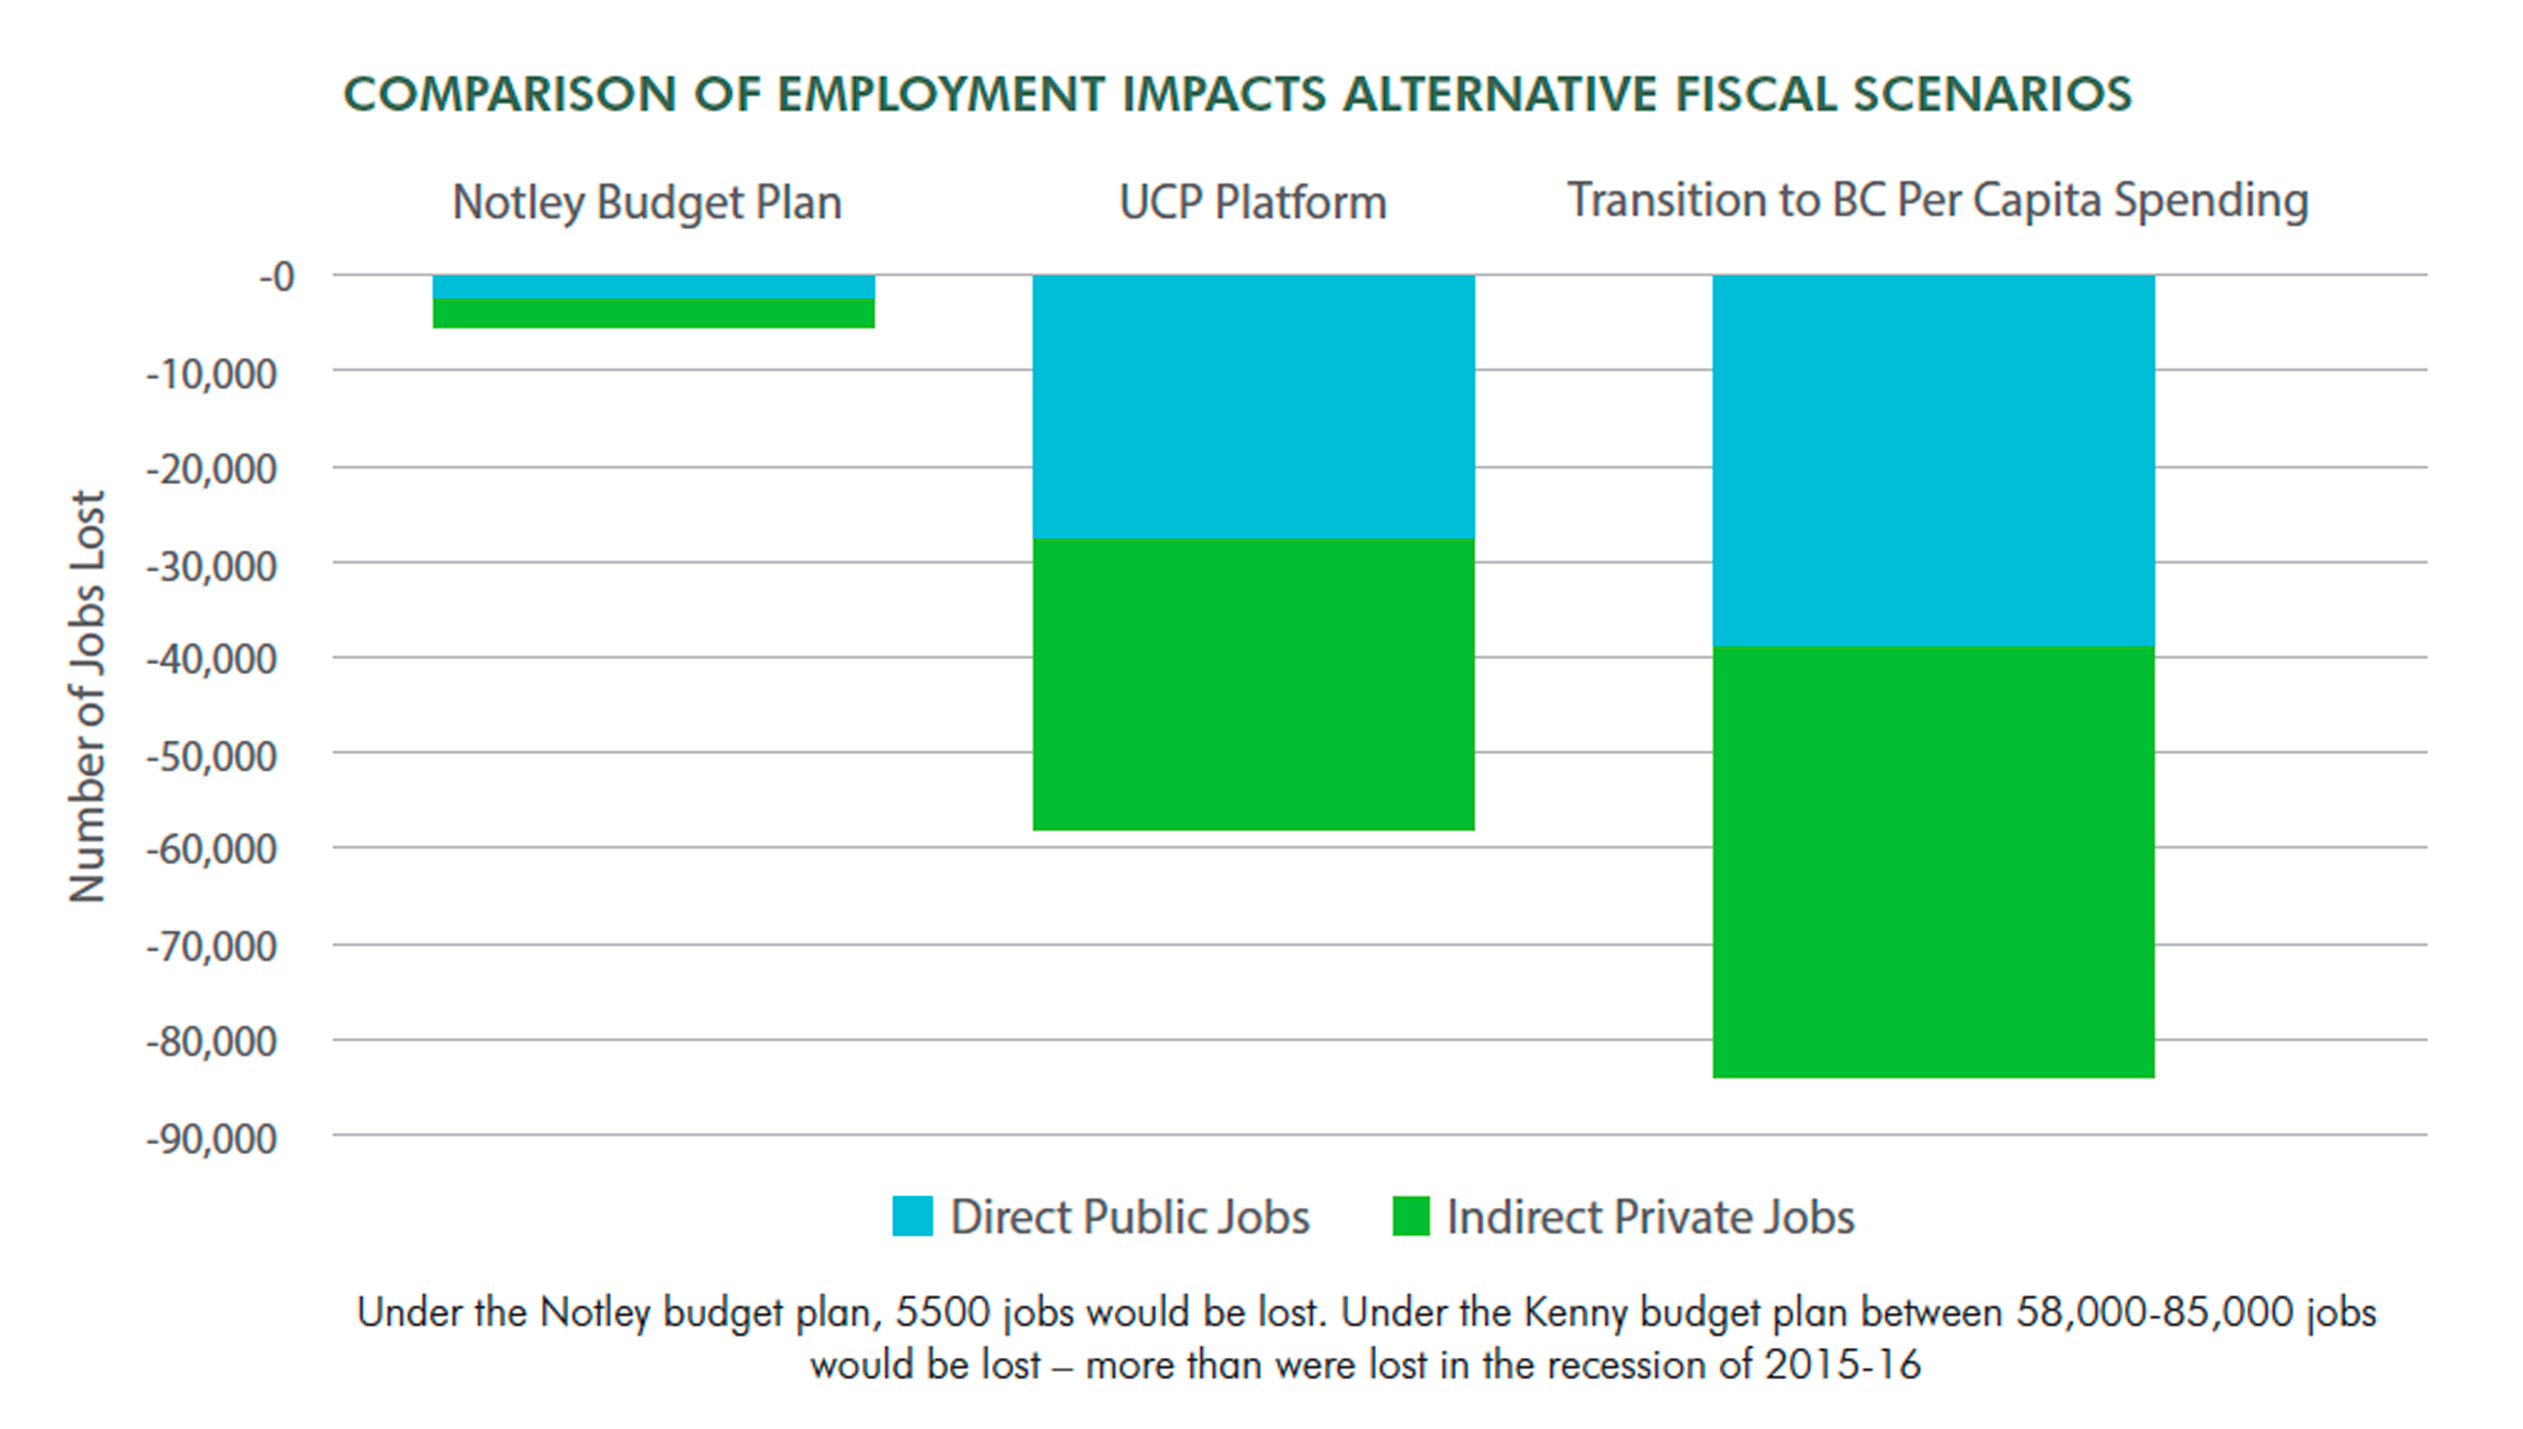 Comparison of Employment Impact Scenarios